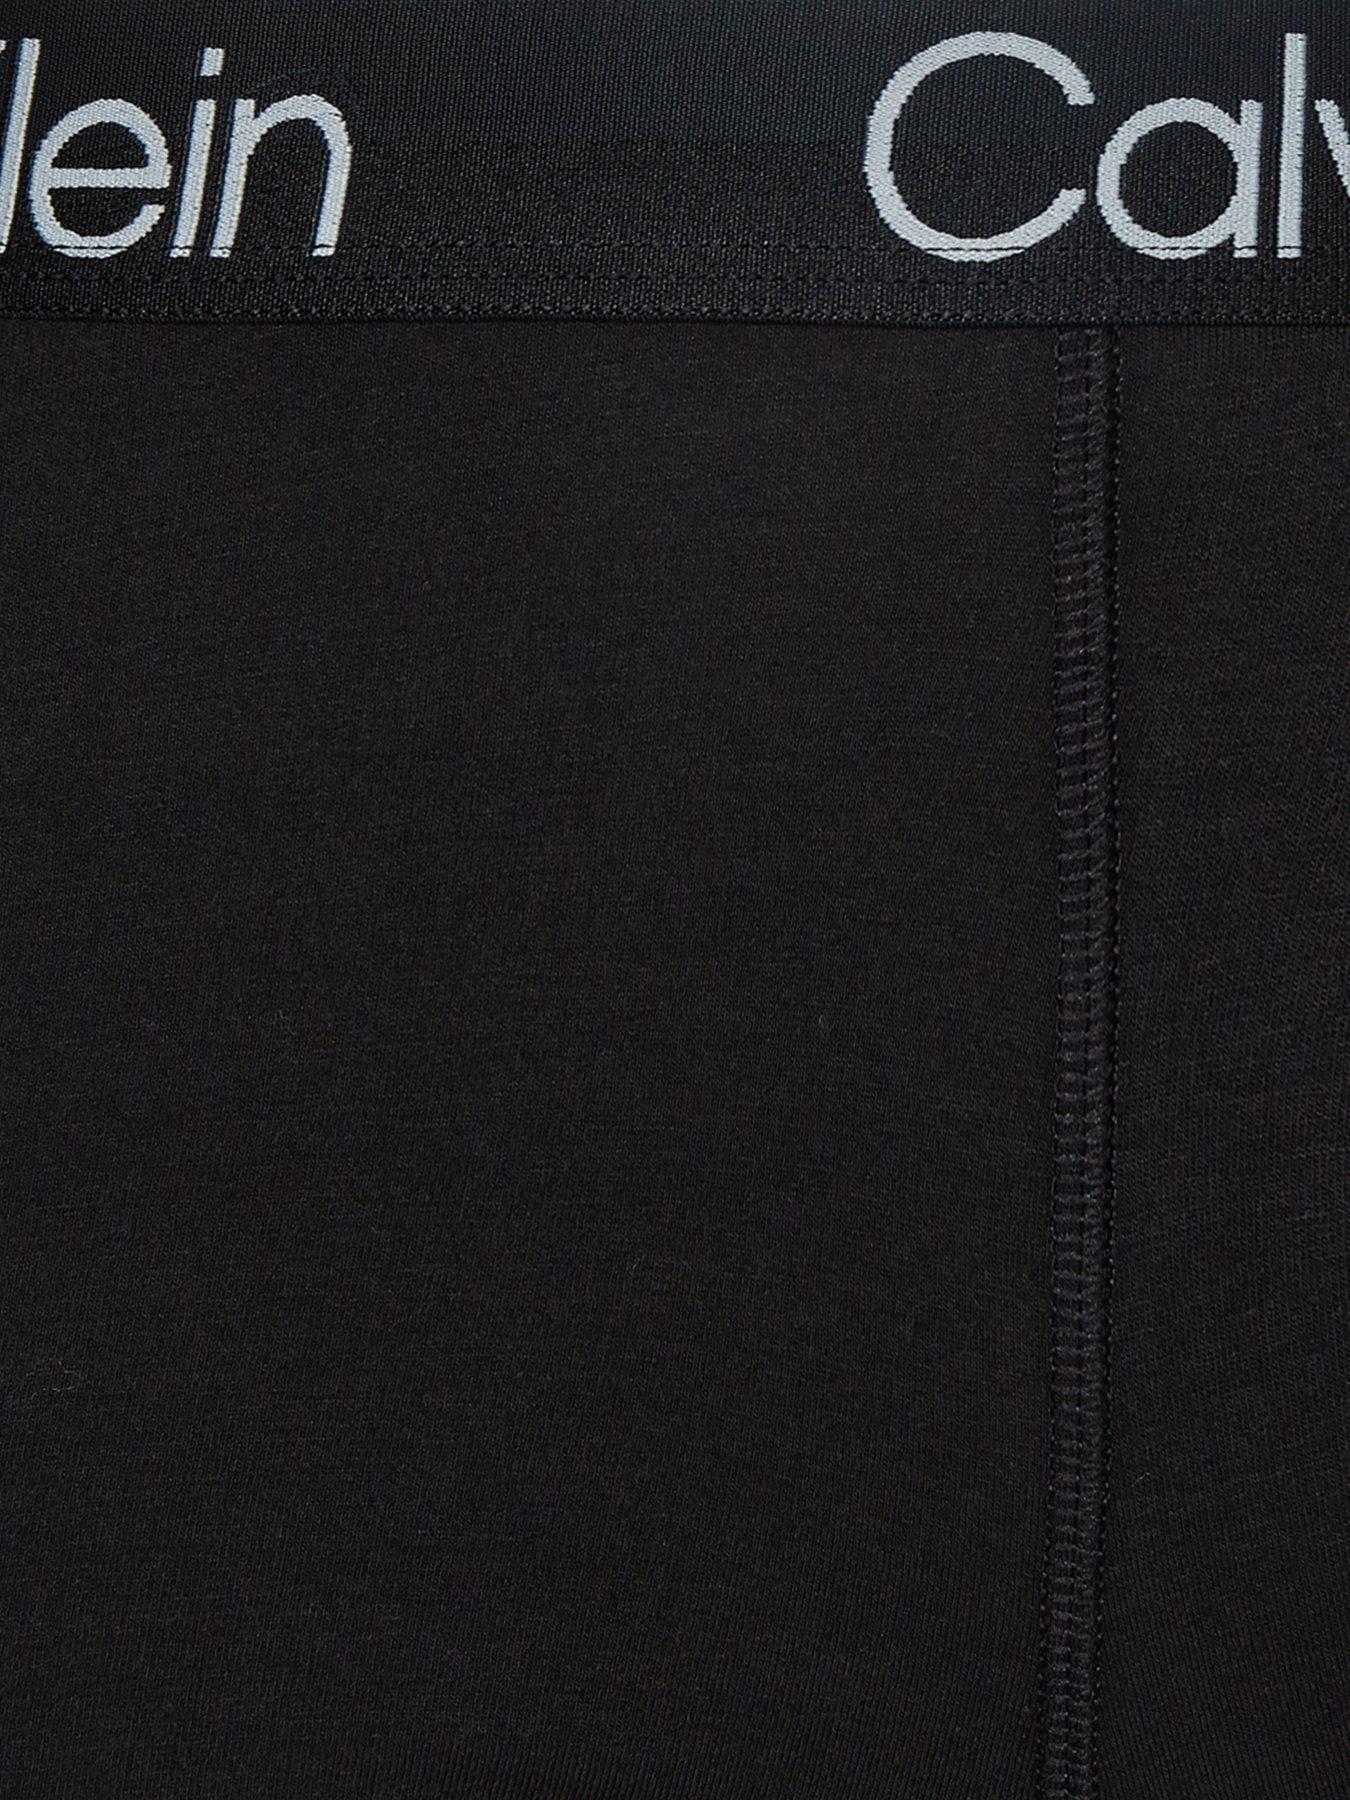 Calvin Klein modern structure sleep boxers in black print